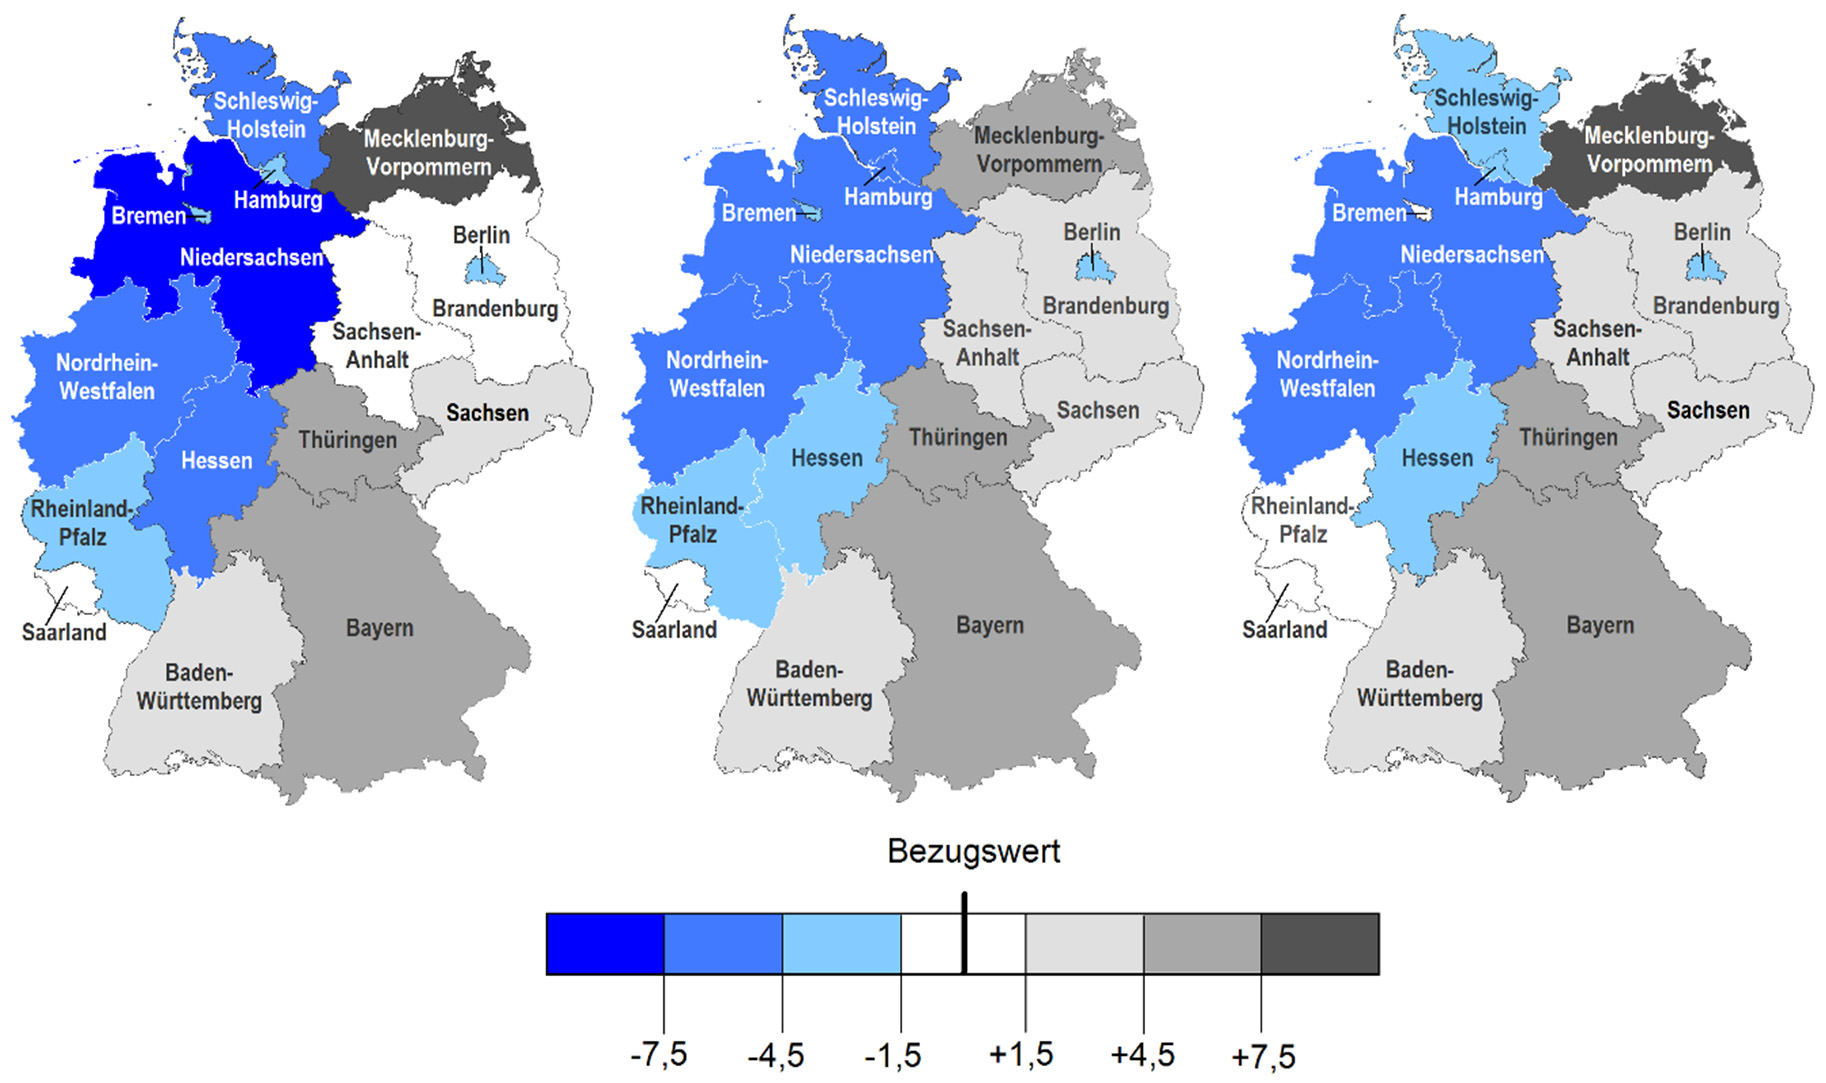 Berufsausbildung in Hessen 2016 Abbildung 1 Angebots-Nachfrage-Relation in den Bundesländern 2013 bis 2015 2013 2014 2015 Hessen: 88,0 Deutschland: 91,9 Hessen: 89,1 Deutschland: 92,7 Hessen: 88,9